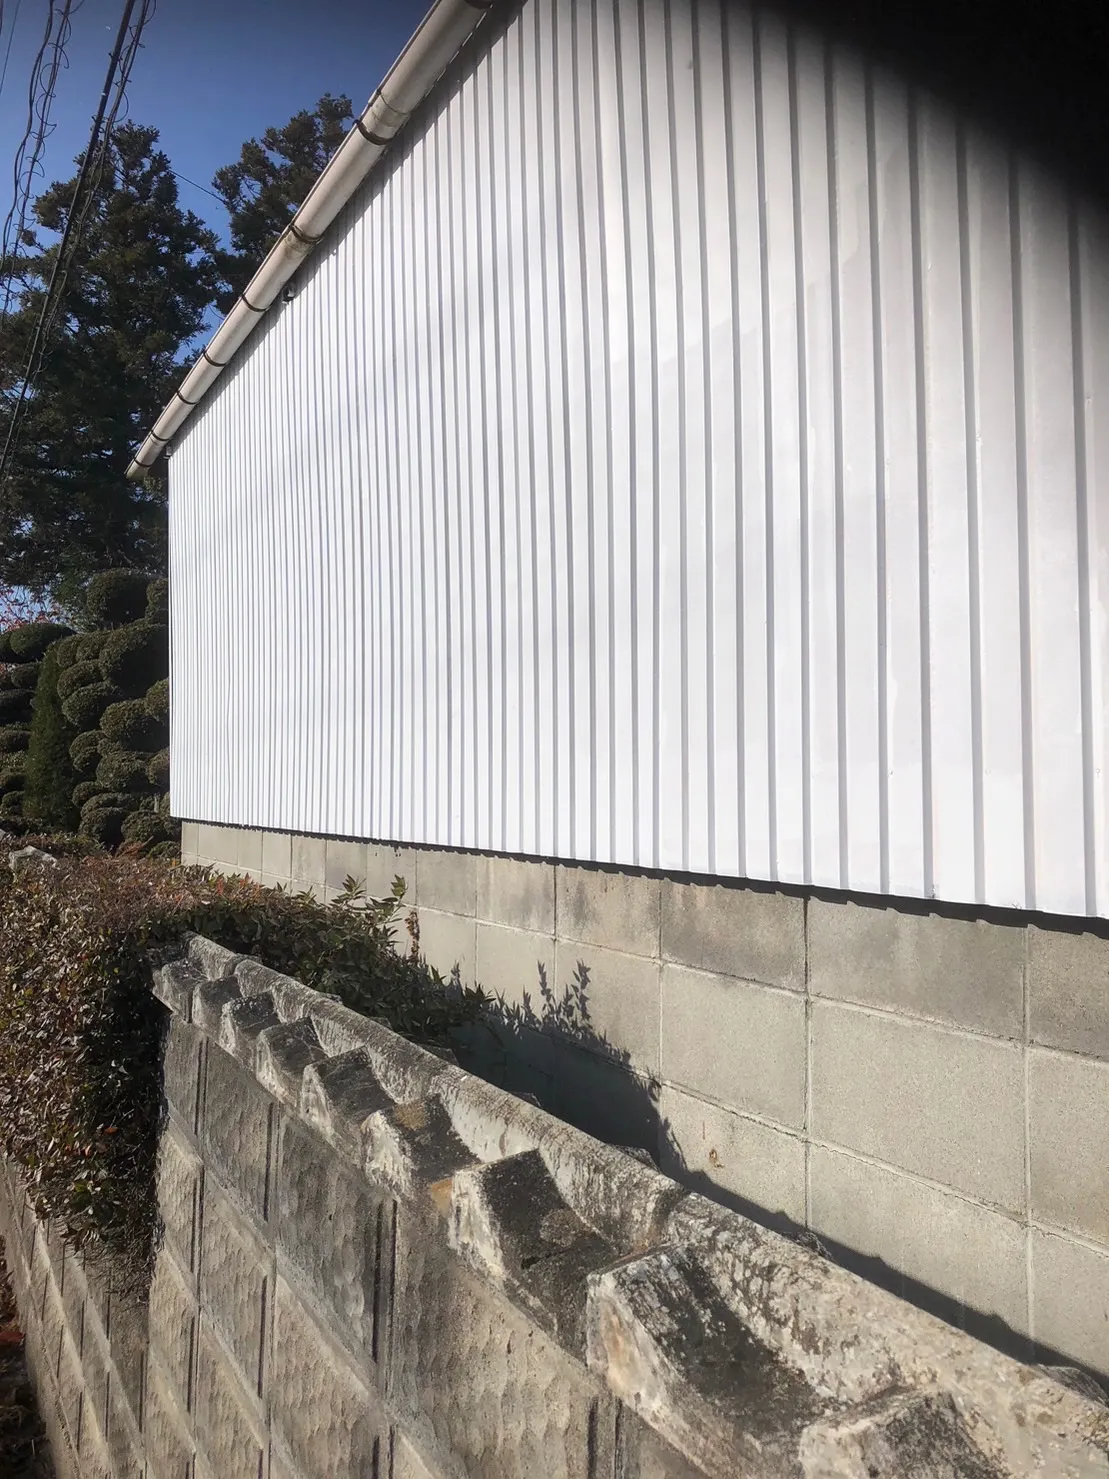 【S様宅「外壁塗装工事」】田尻町で外壁塗装工事を開始しました。「ファインパーフェクトトップ」ND-111